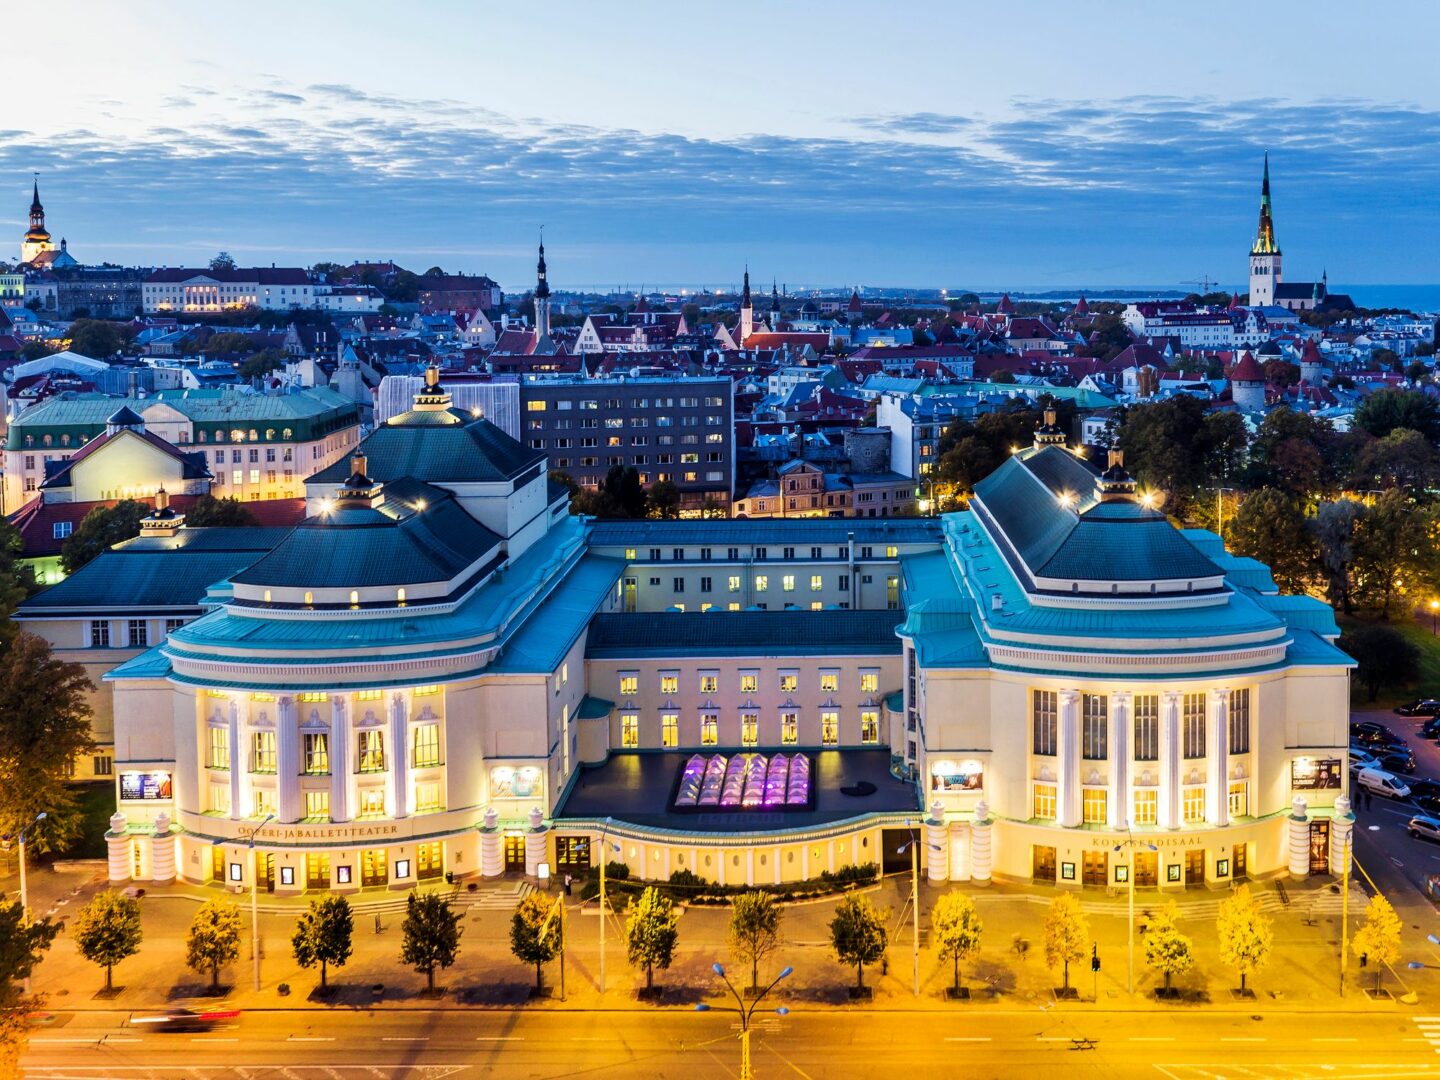 Estonia-teatteri ja -konserttisali ovat tuttuja suomalaisillekin usean vuosikymmenen ajalta. © Visit Estonia